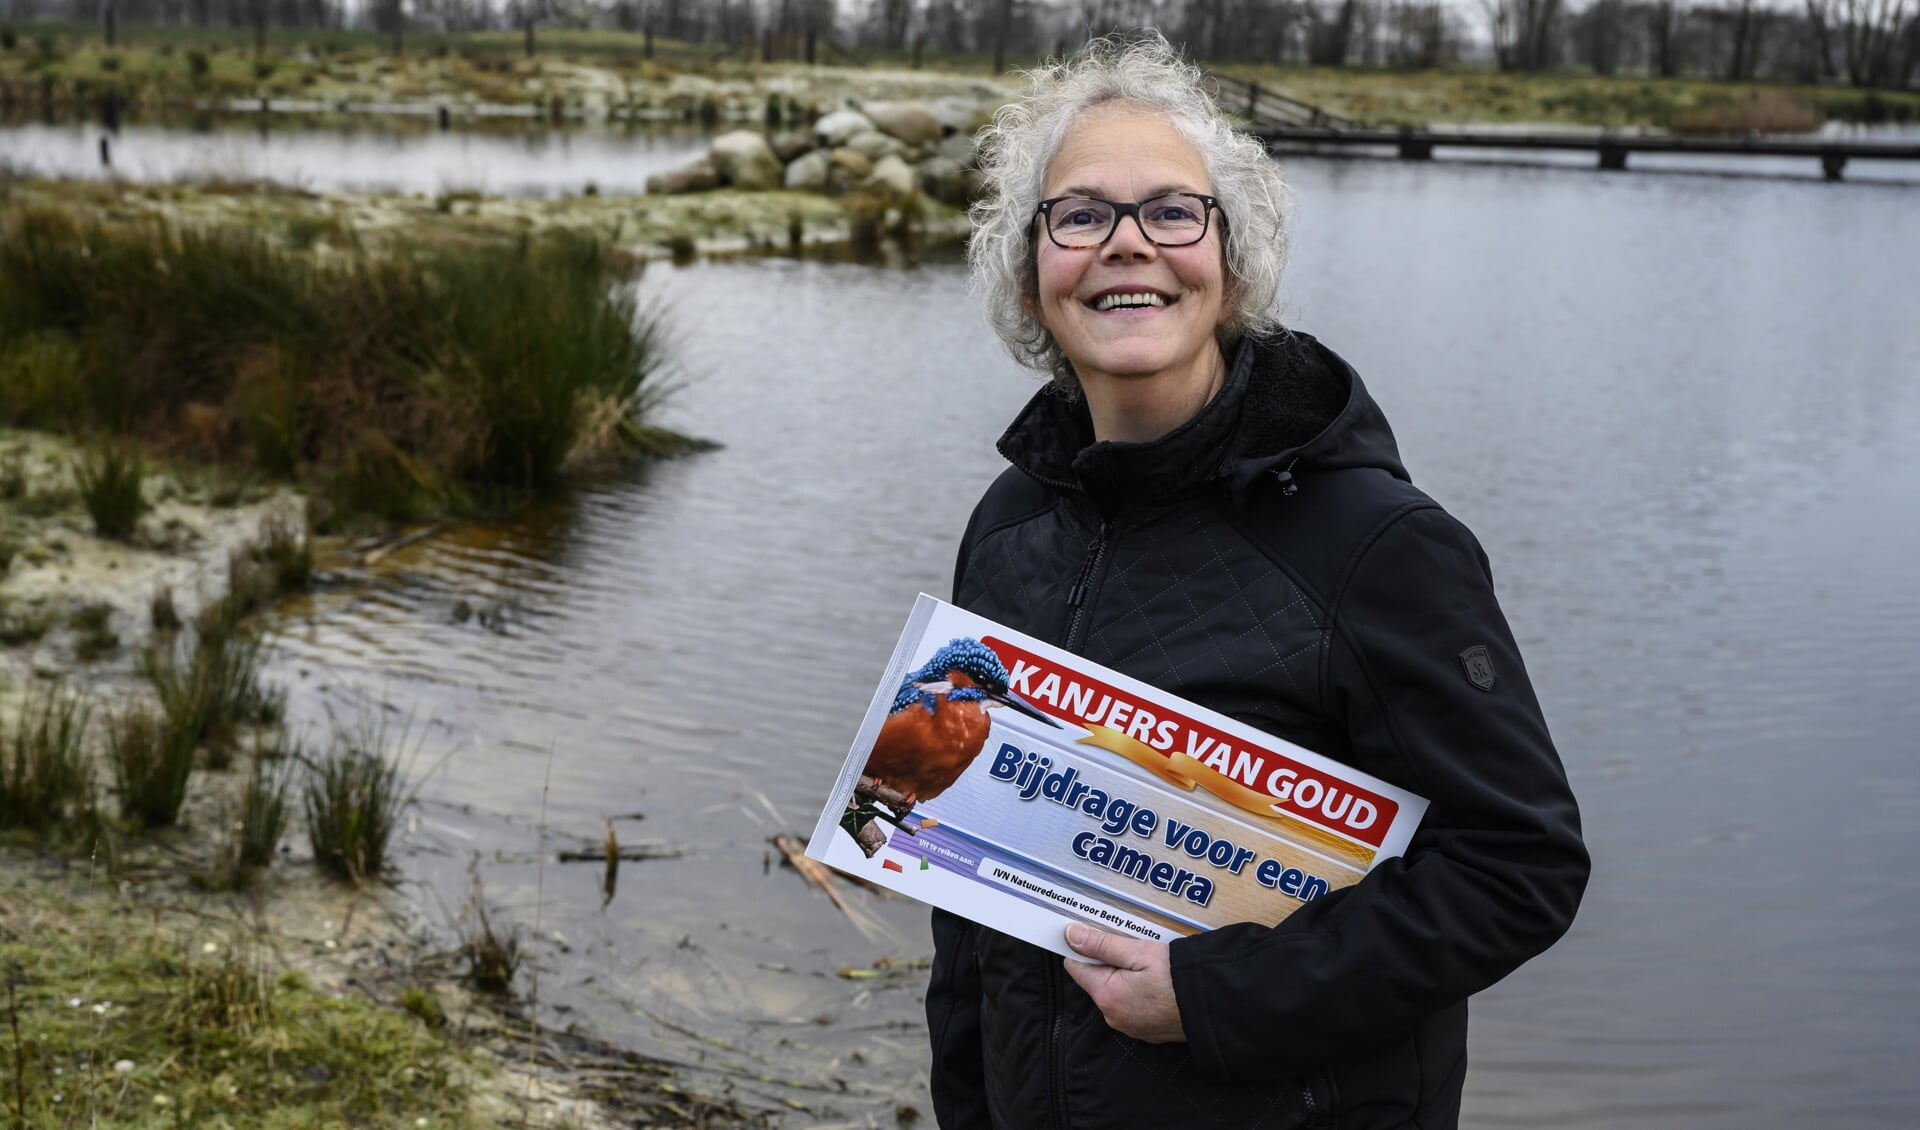 Een grote wens van Betty Kooistra uit Burgum gaat in vervulling dankzij een nominatie van IVN Natuureducatie bij de Postcode Loterij